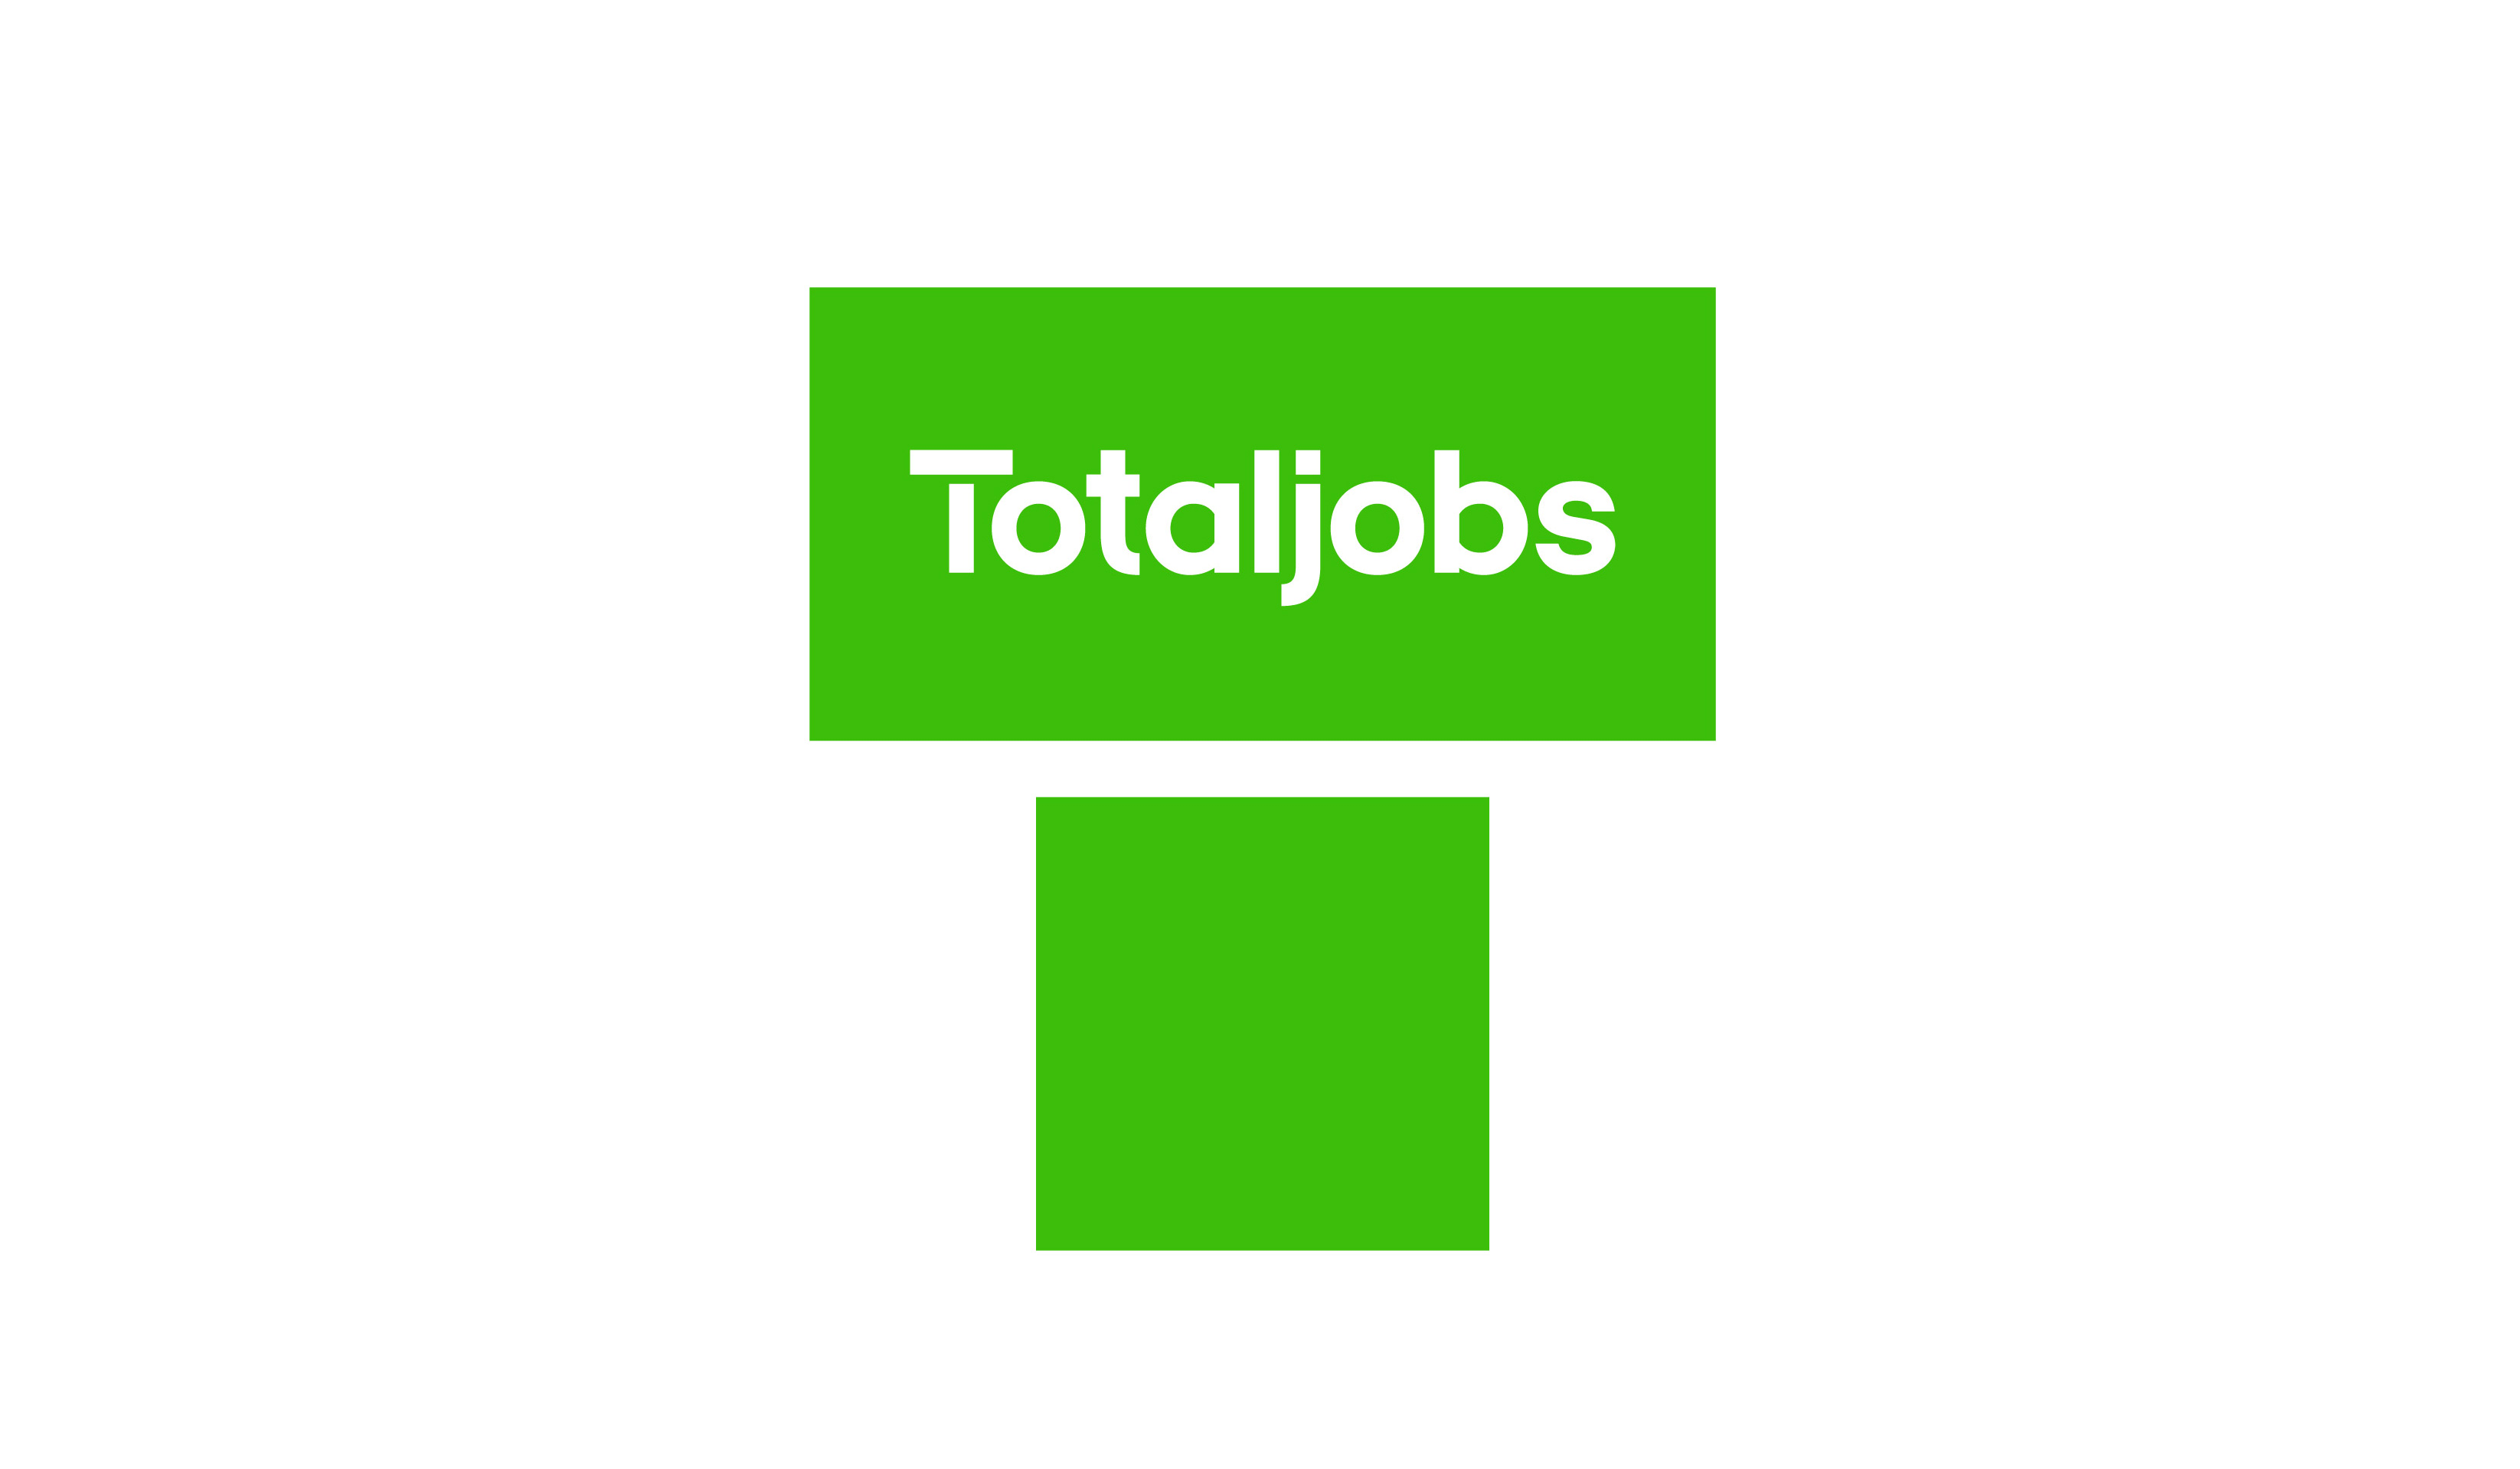 领先的招聘平台Totaljobs更新品牌形象